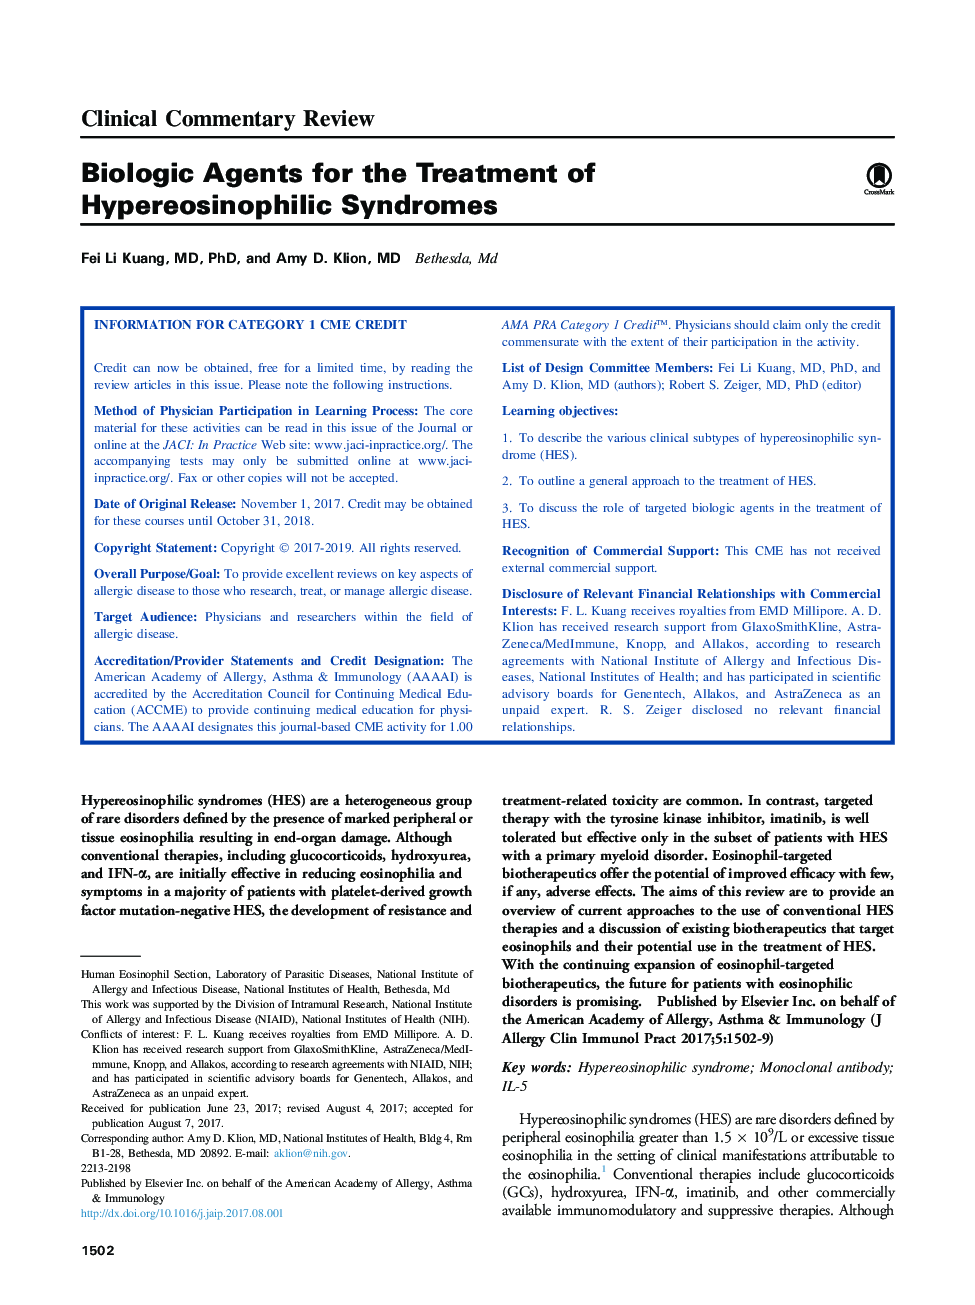 عوامل بیولوژیک برای درمان سندرم هیپرئوزینوفیلیک 